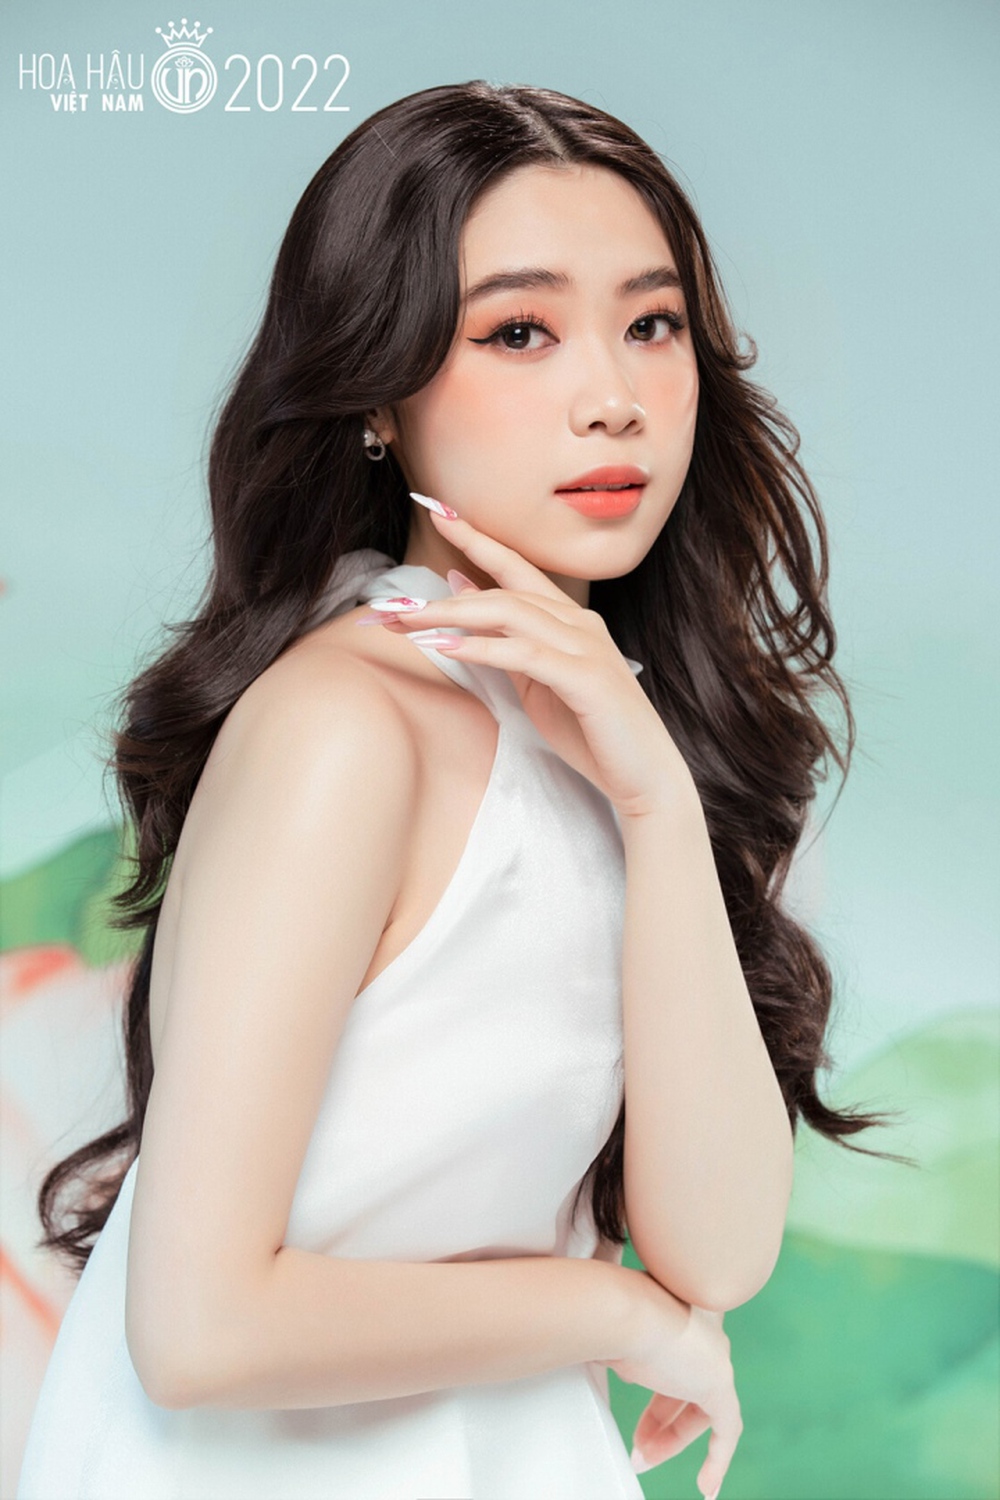 Ảnh chân dung trong veo, ngọt ngào của dàn thí sinh Hoa hậu Việt Nam 2022 - Ảnh 4.